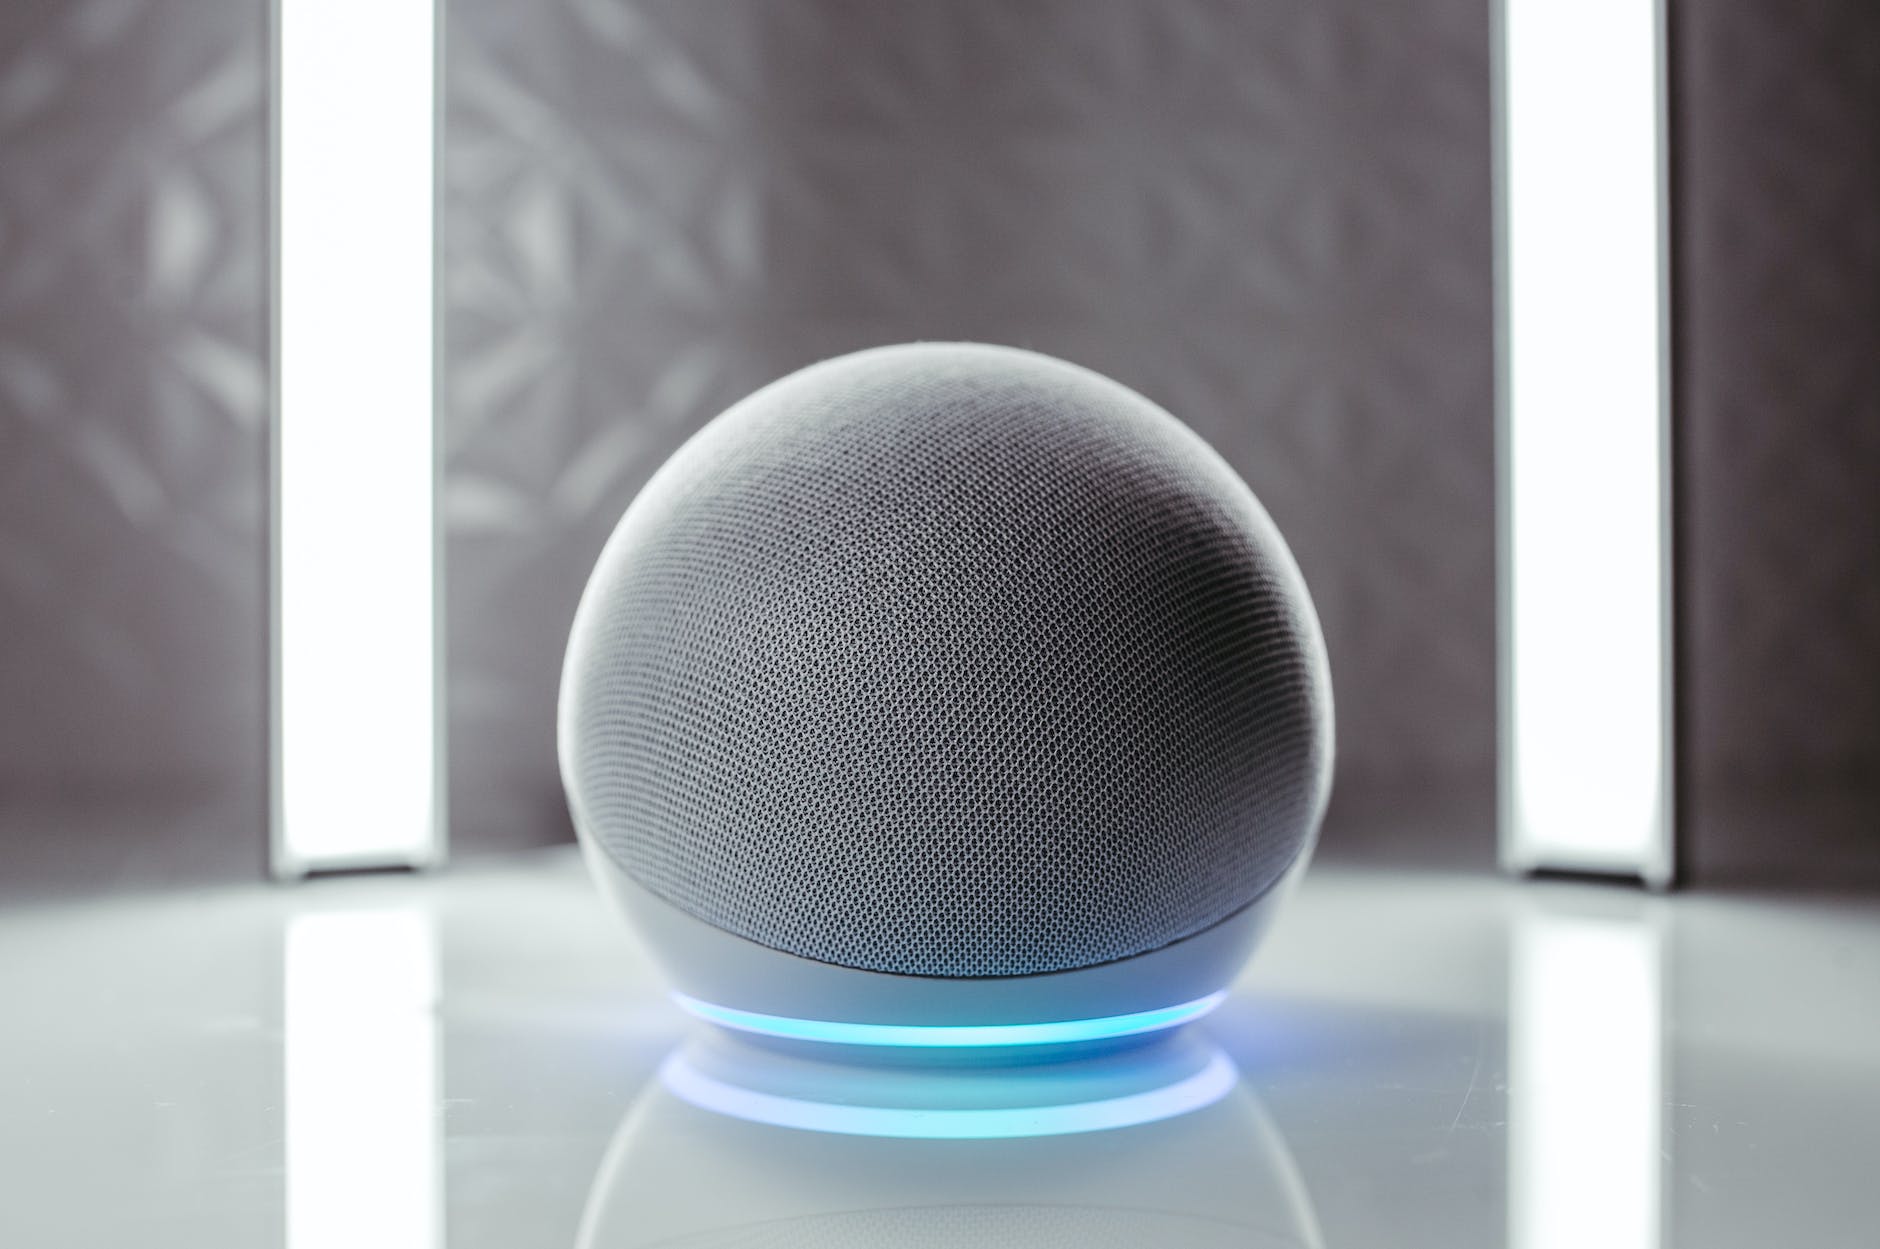 close up photo of gray round speaker